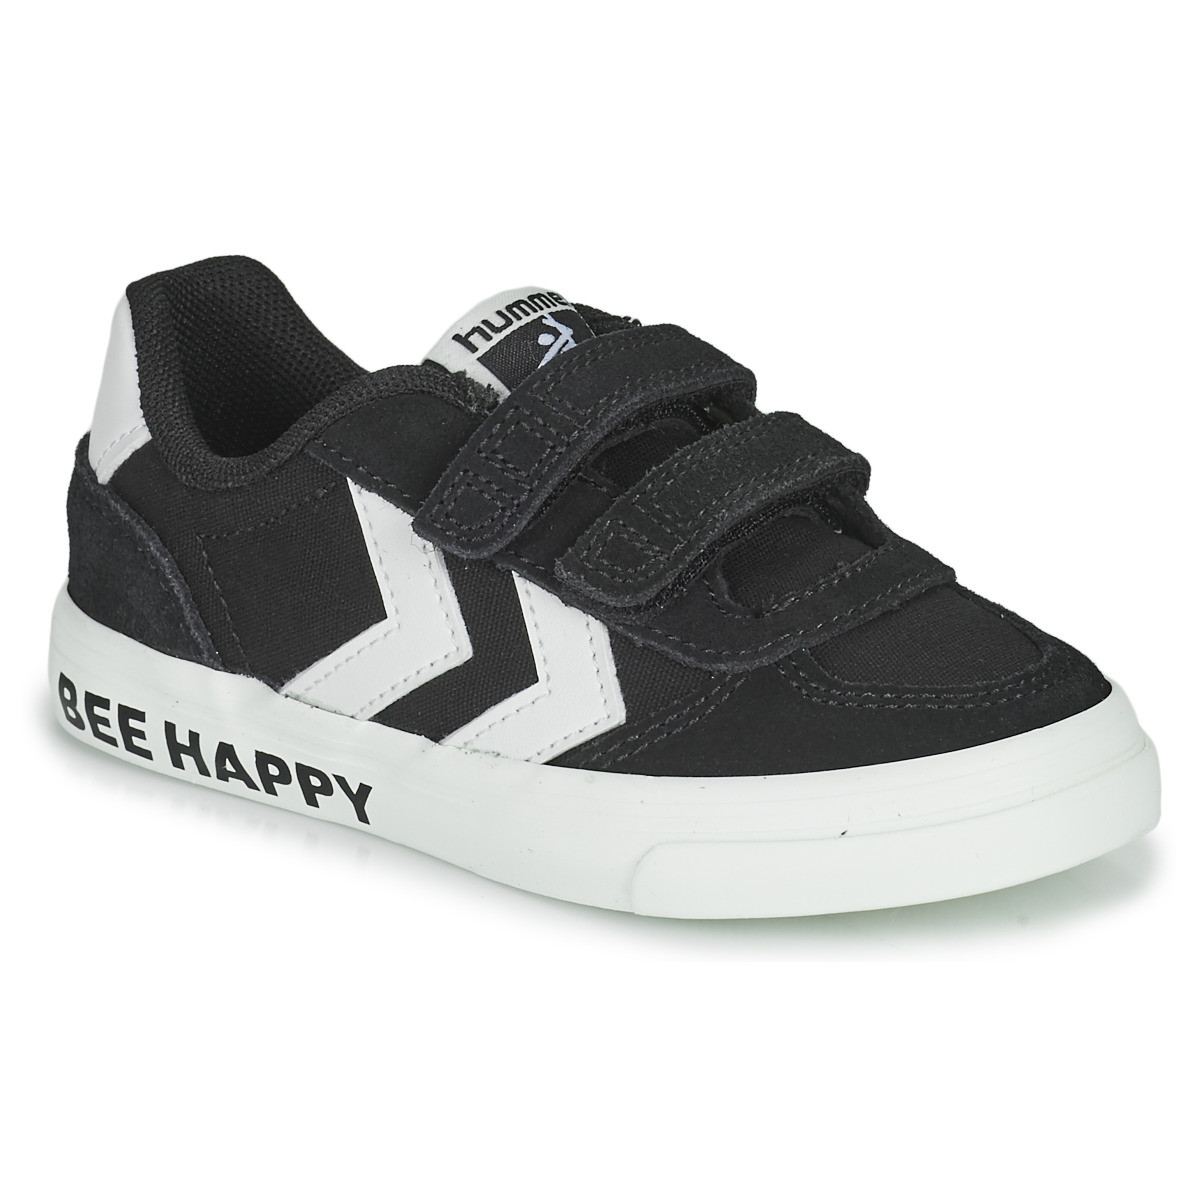 Παπούτσια Παιδί Χαμηλά Sneakers hummel STADIL 3.0 KICK JR Black